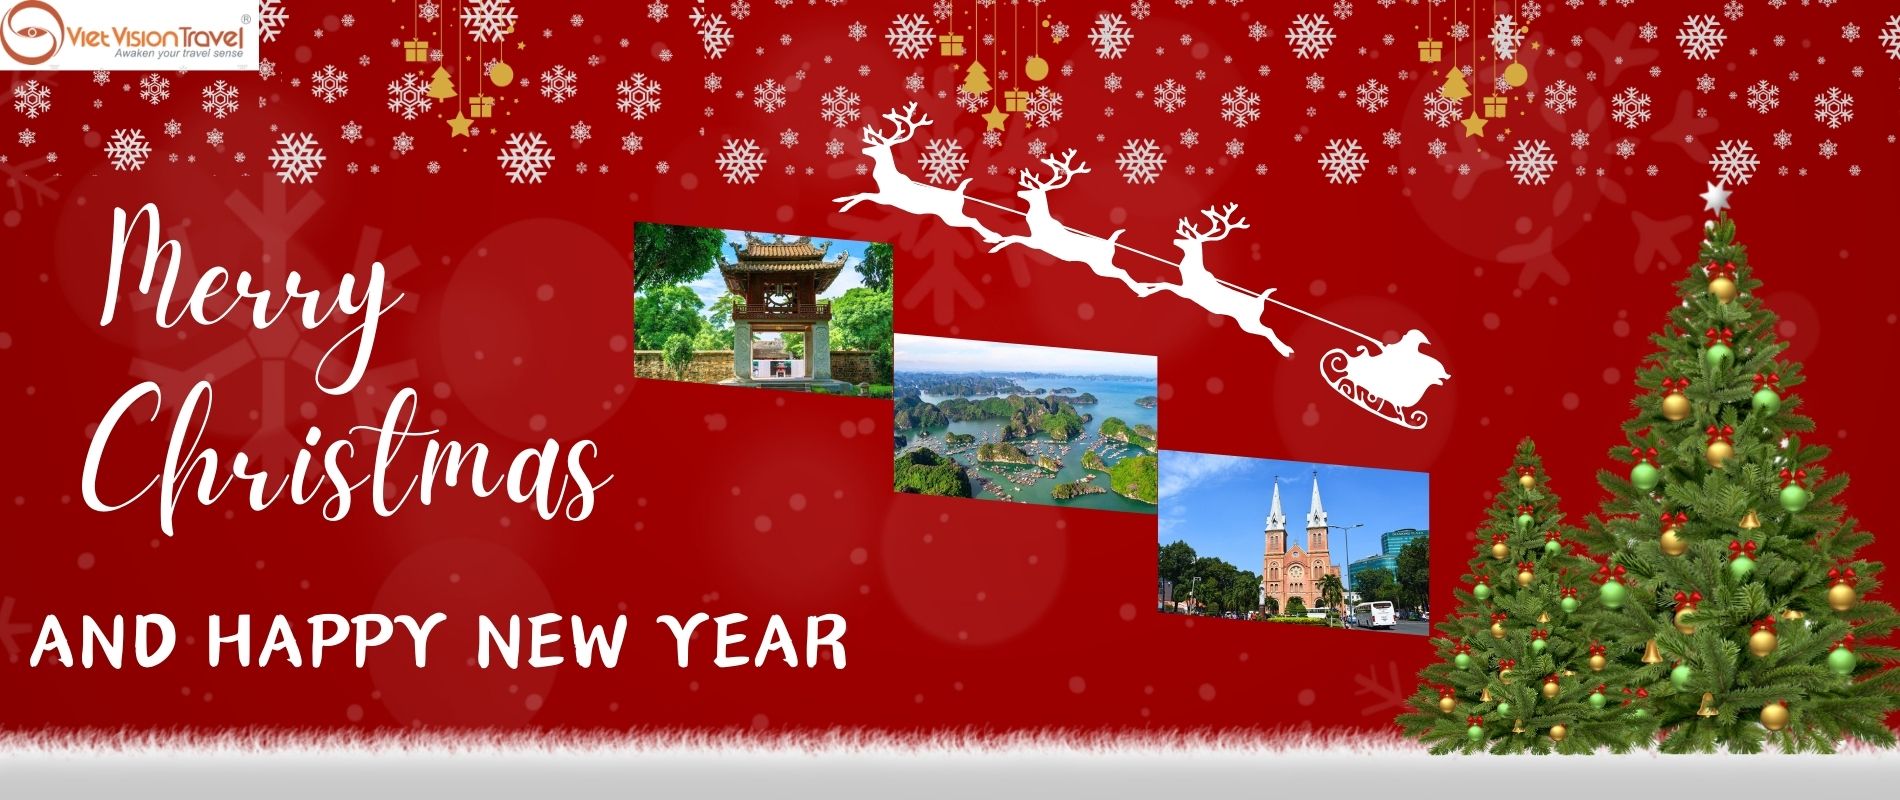 Merry Christmas - Vietnam tour company